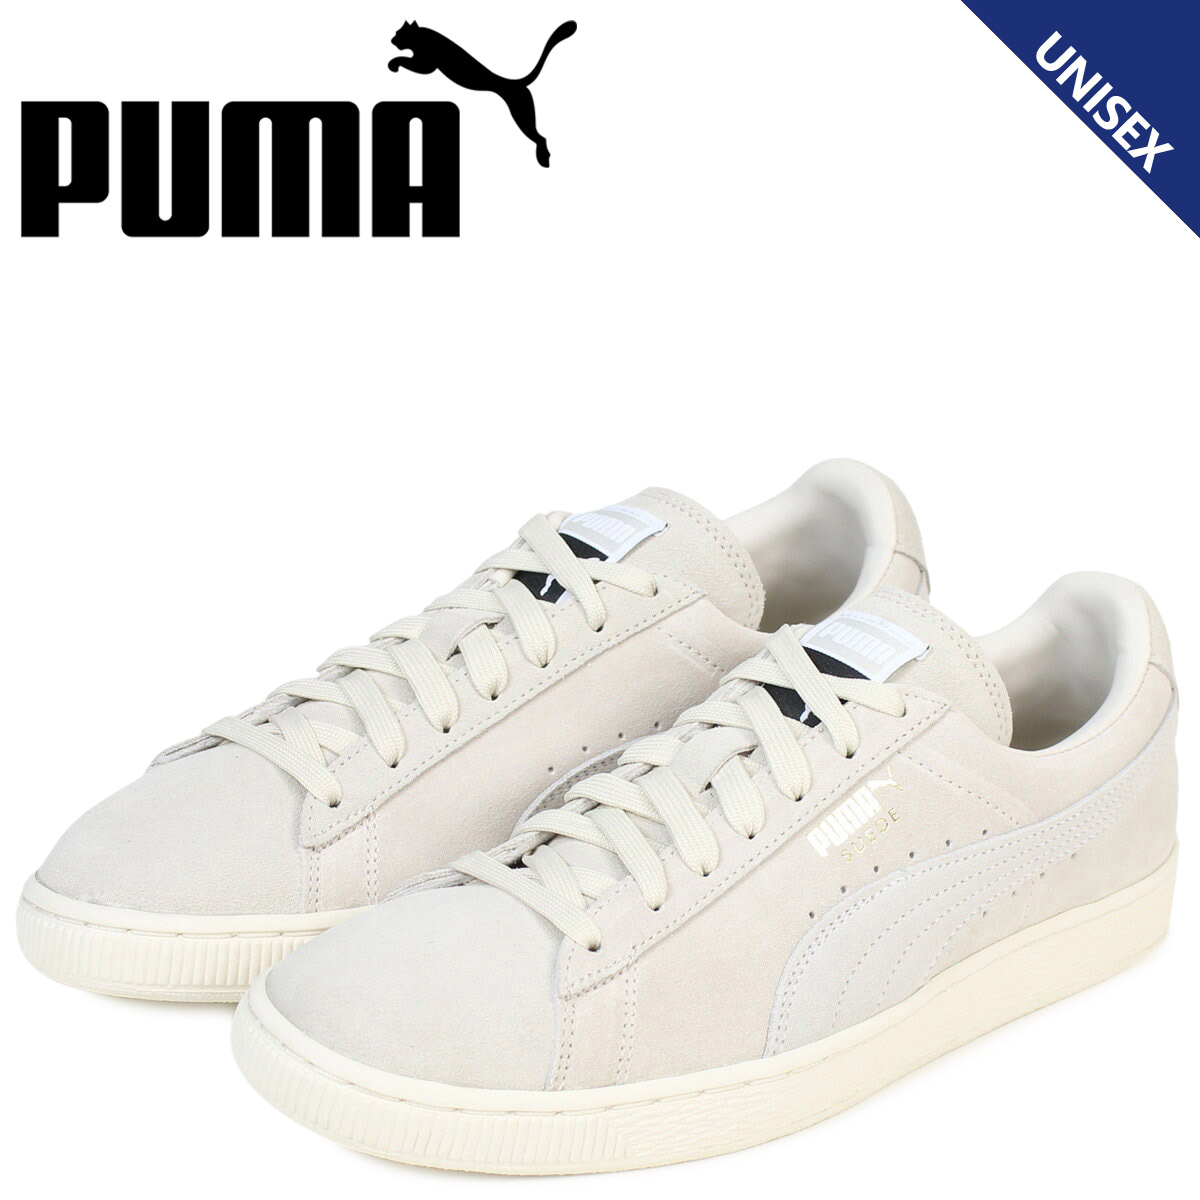 puma suede shoes online